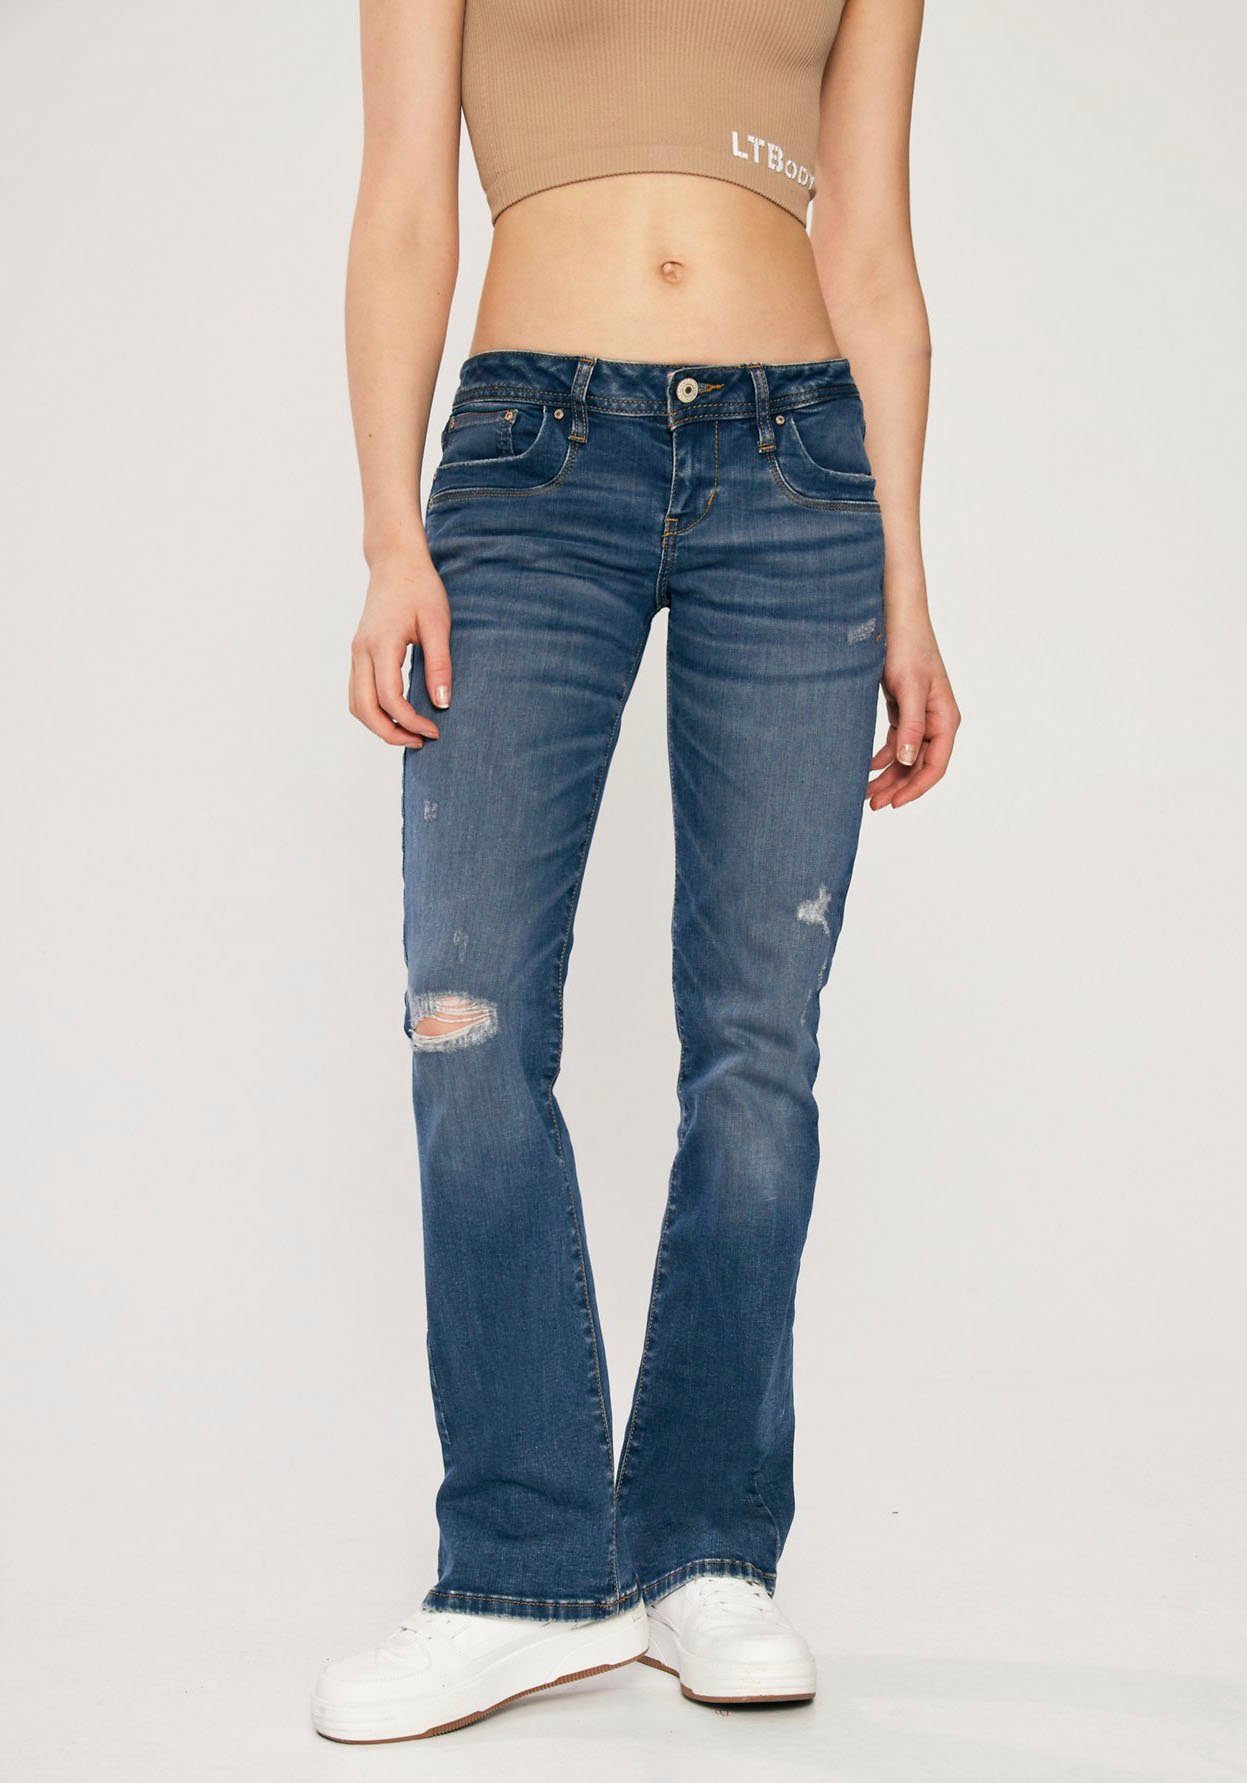 betrügen wahrscheinlich Boden ltb damen jeans valerie bootcut Leere Erhöhen  Nervenkitzel